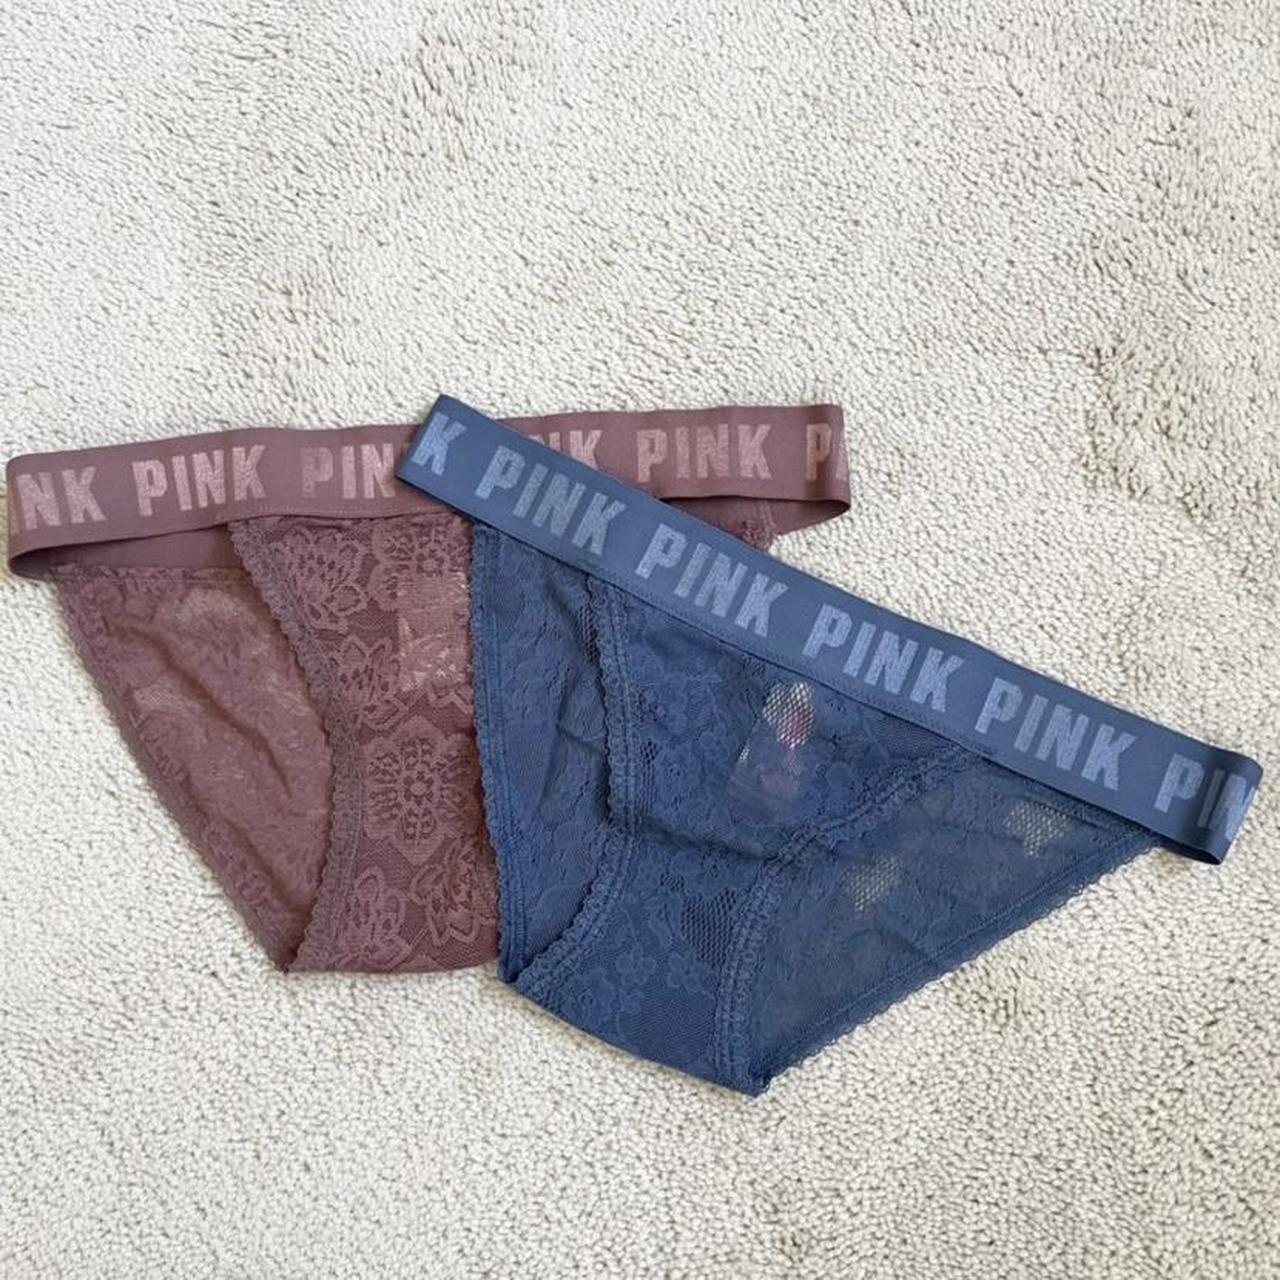 Women’s PINK brand underwear.